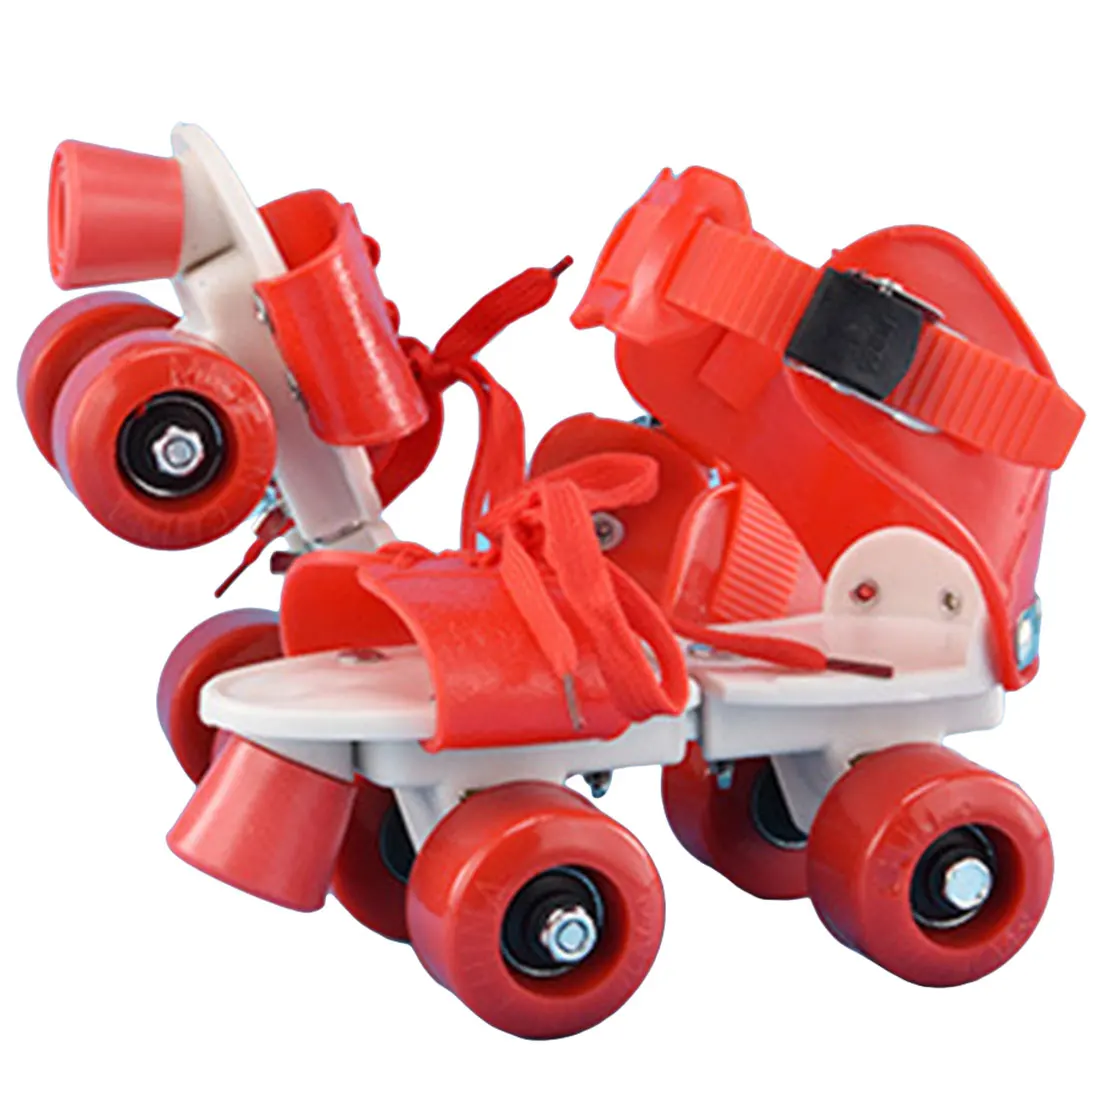 Новые детские роликовые коньки двухрядные 4 колеса регулируемый размер обувь для катания на коньках раздвижные Инлайн ролики для слалома подарки для детей - Color: B